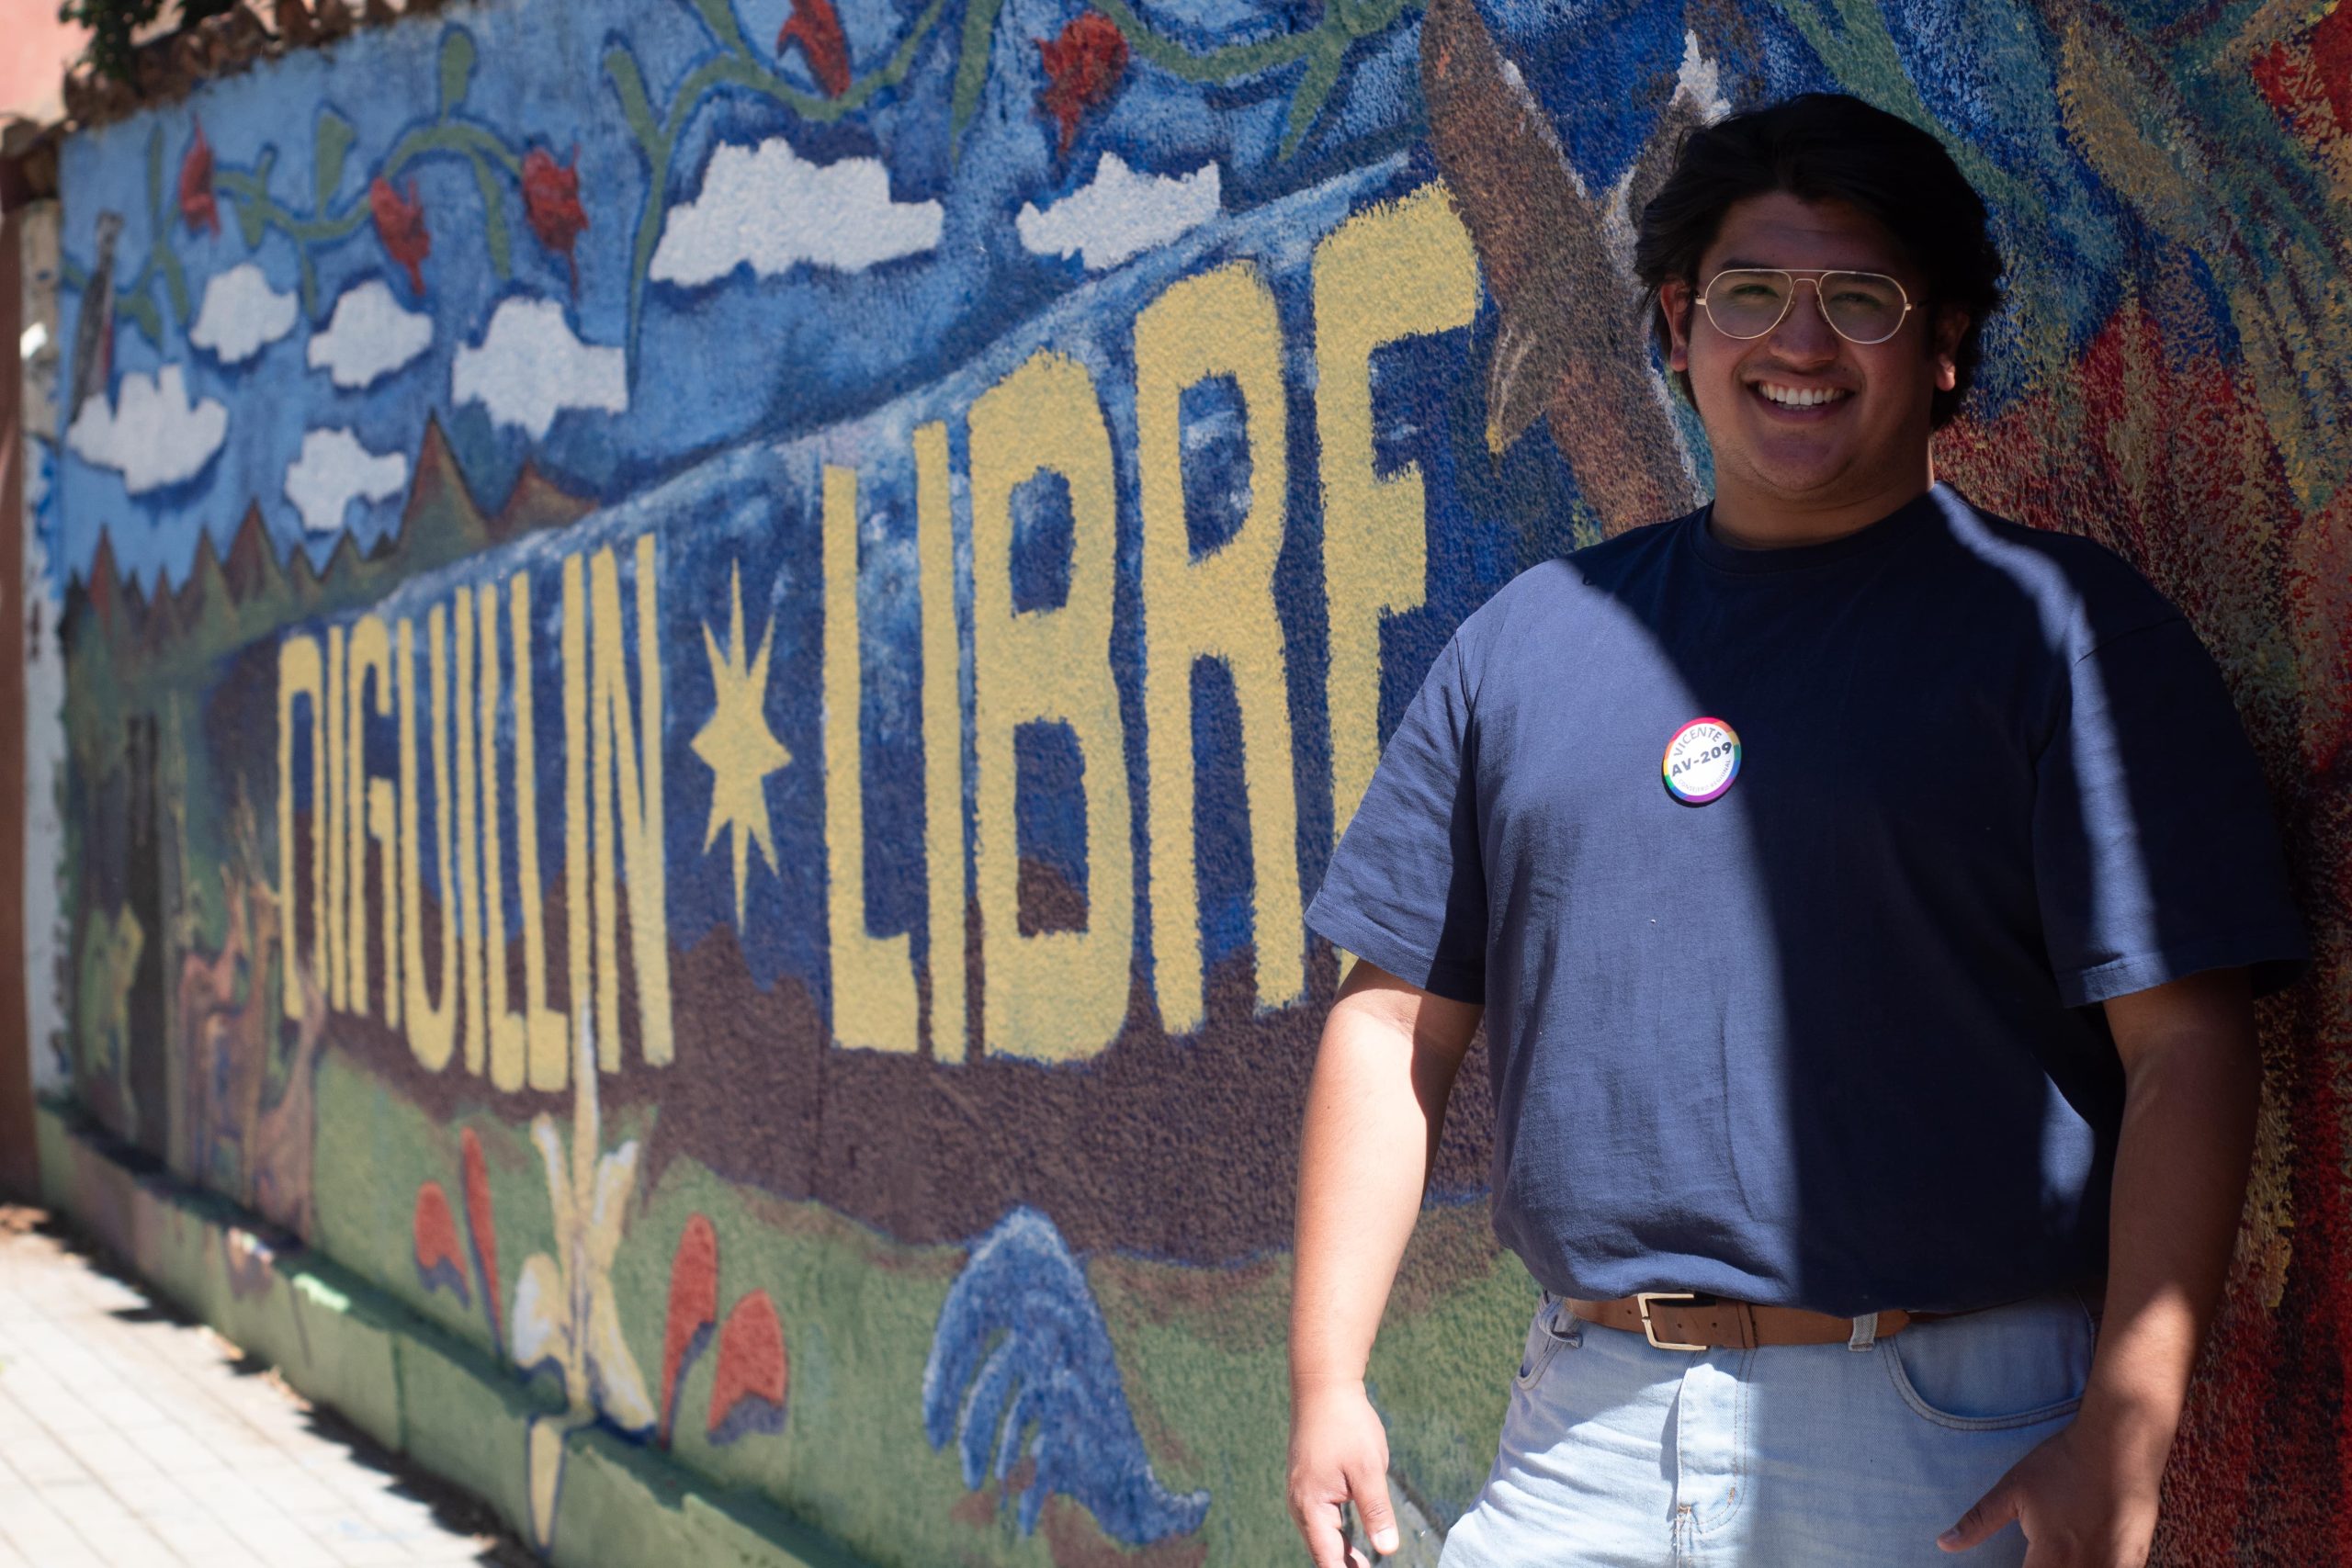 Un joven sonriente está de pie ocupando el lado derecho de la pantalla, está apoyado en un mural que dice "Diguillín libre"